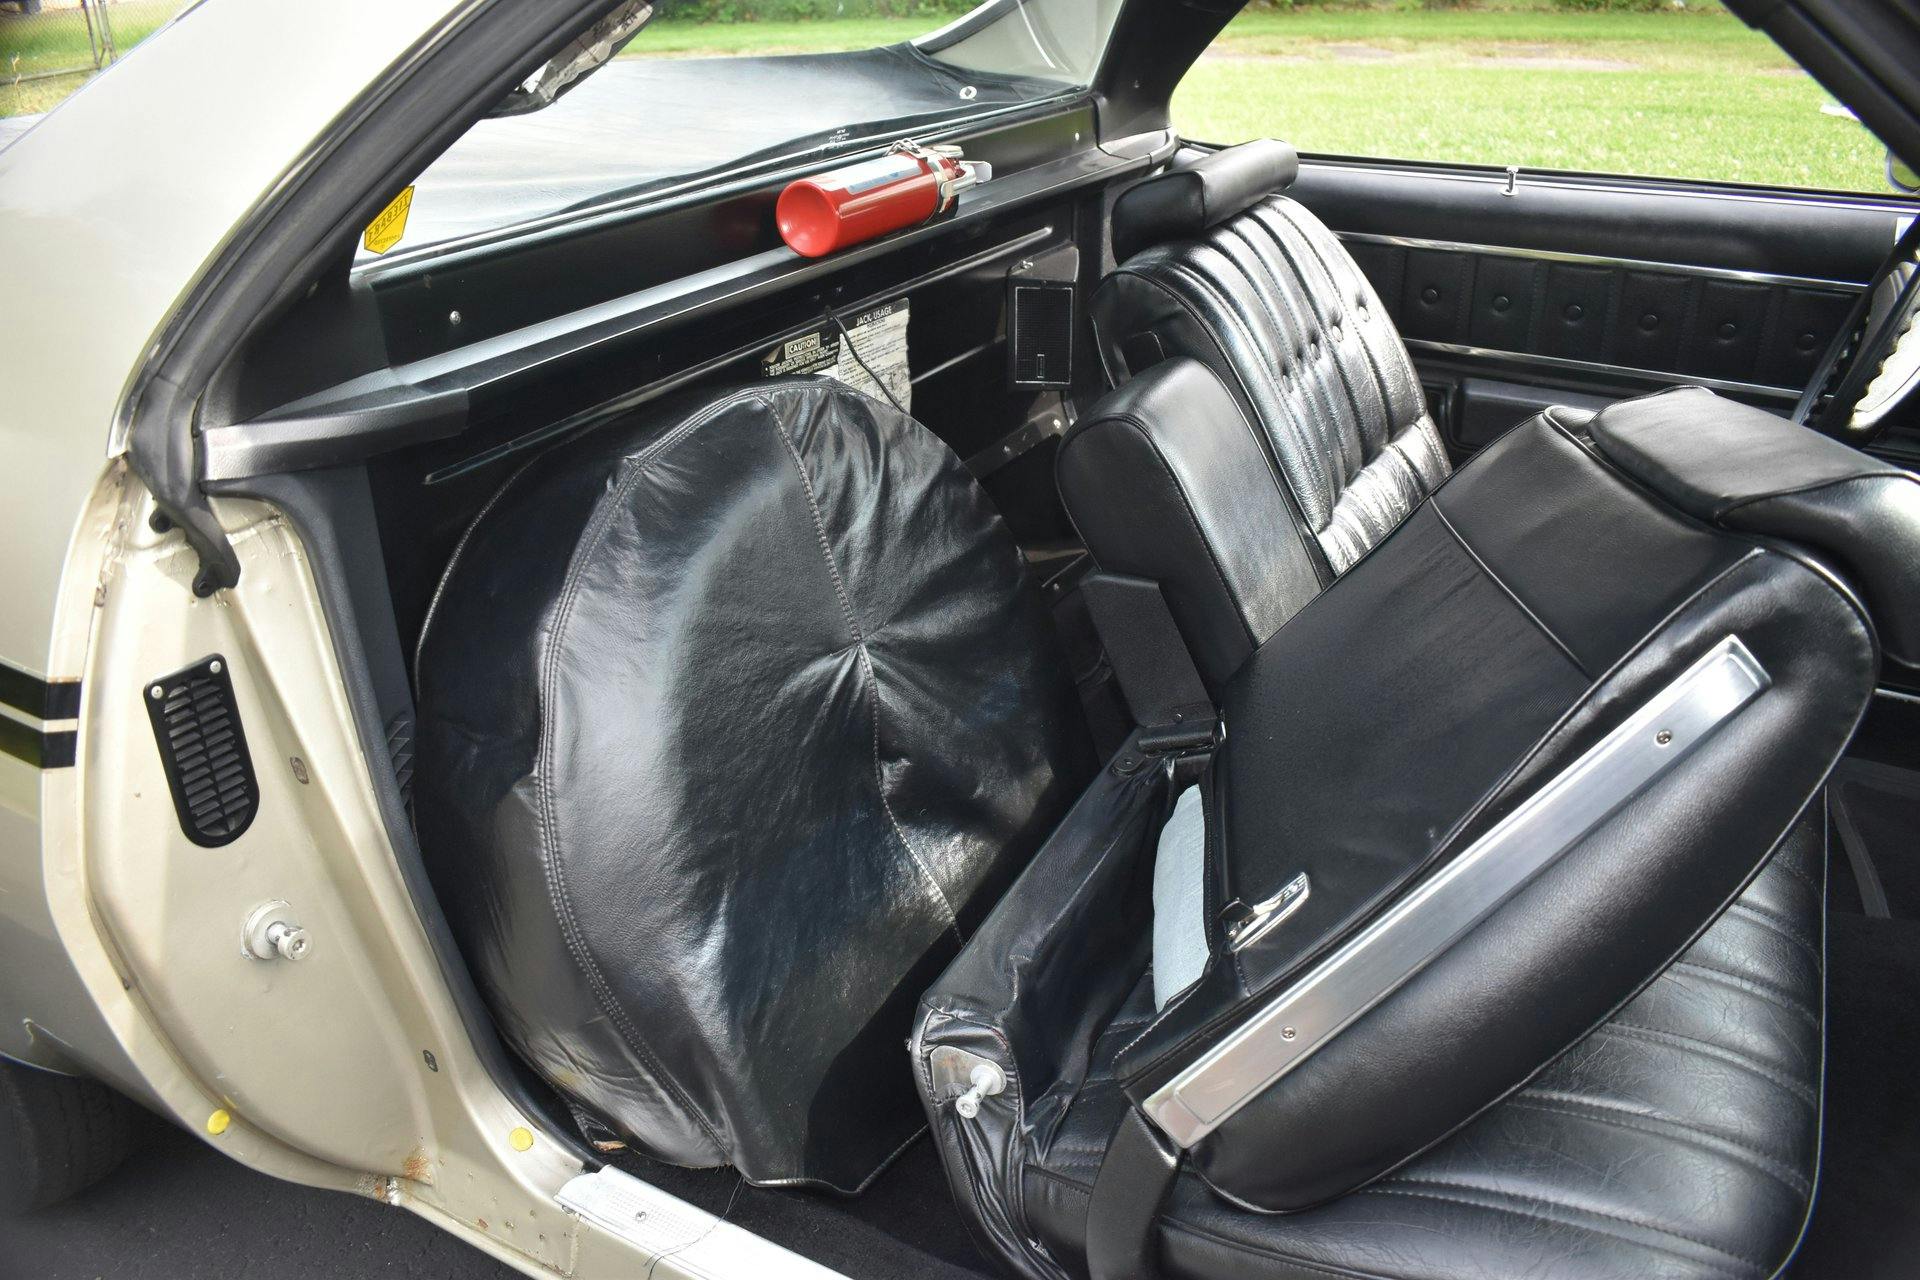 1974 Chevrolet El Camino interior behind seats